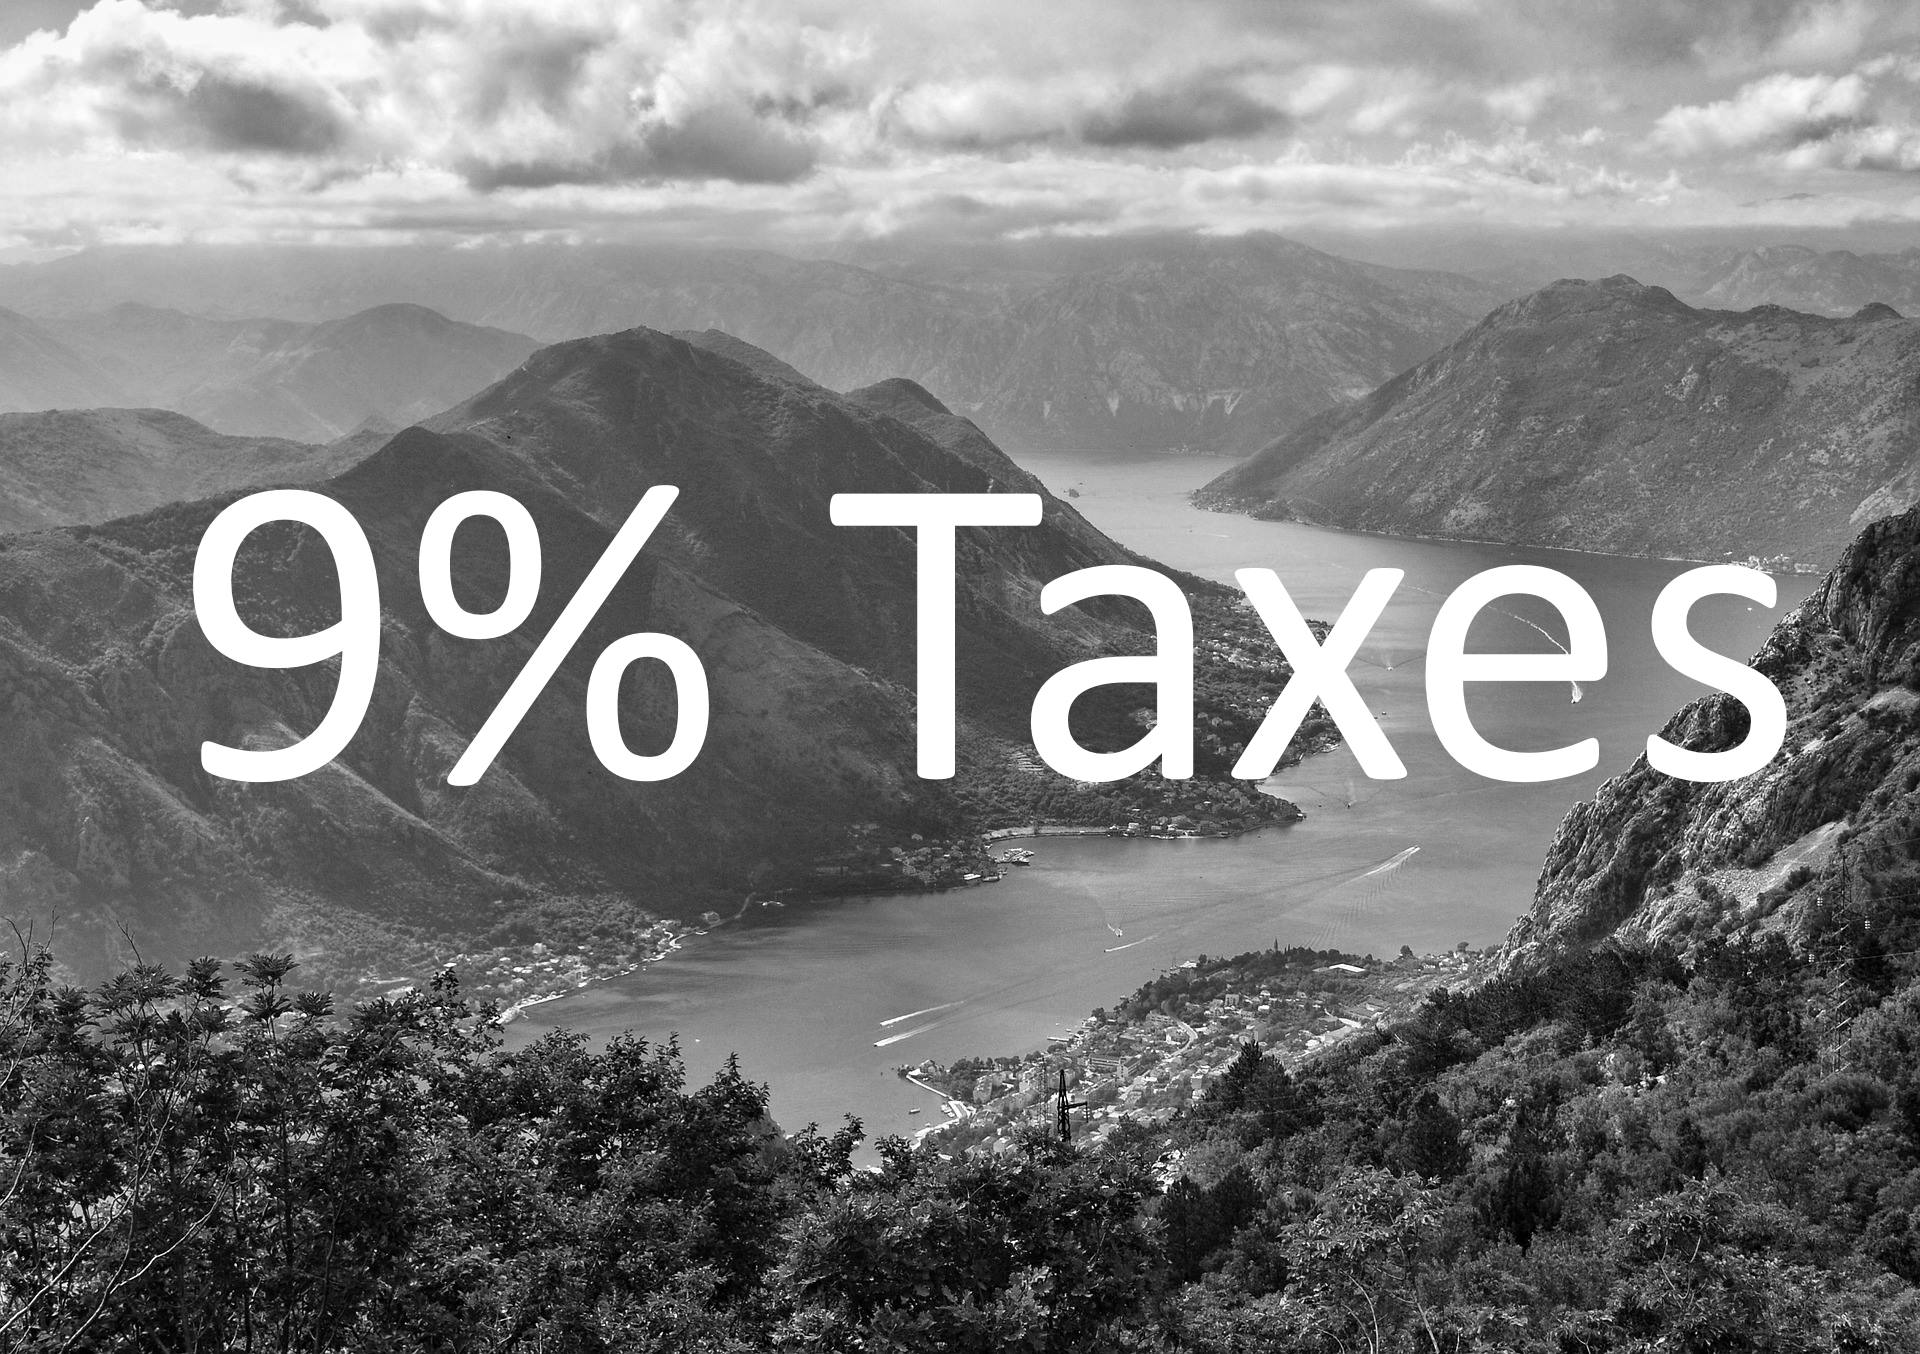 montenegro 9% taxes